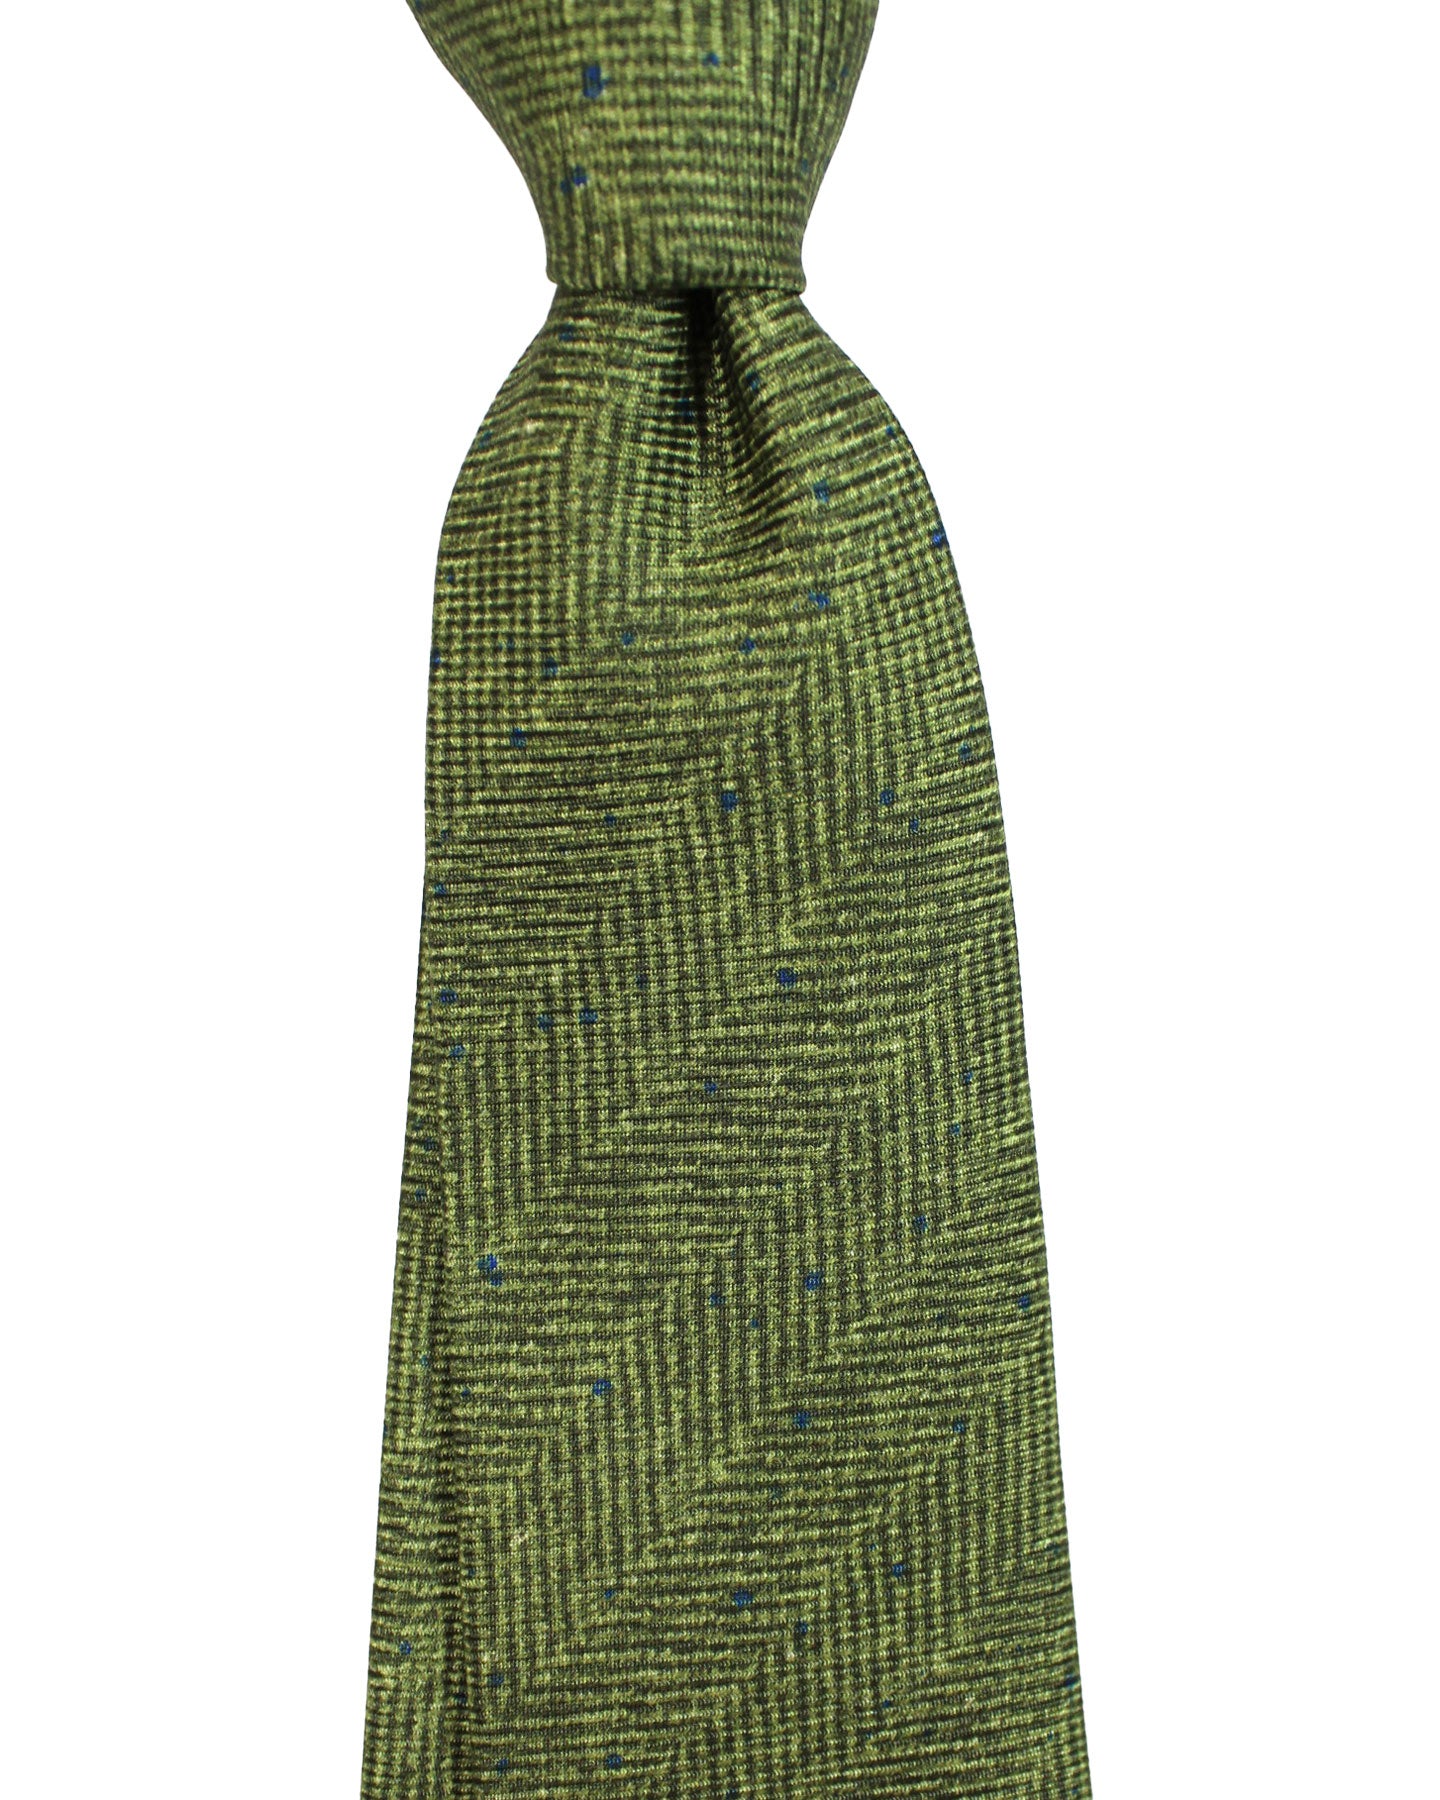 Kiton Silk Tie Green Navy Herringbone Design - Sevenfold Necktie